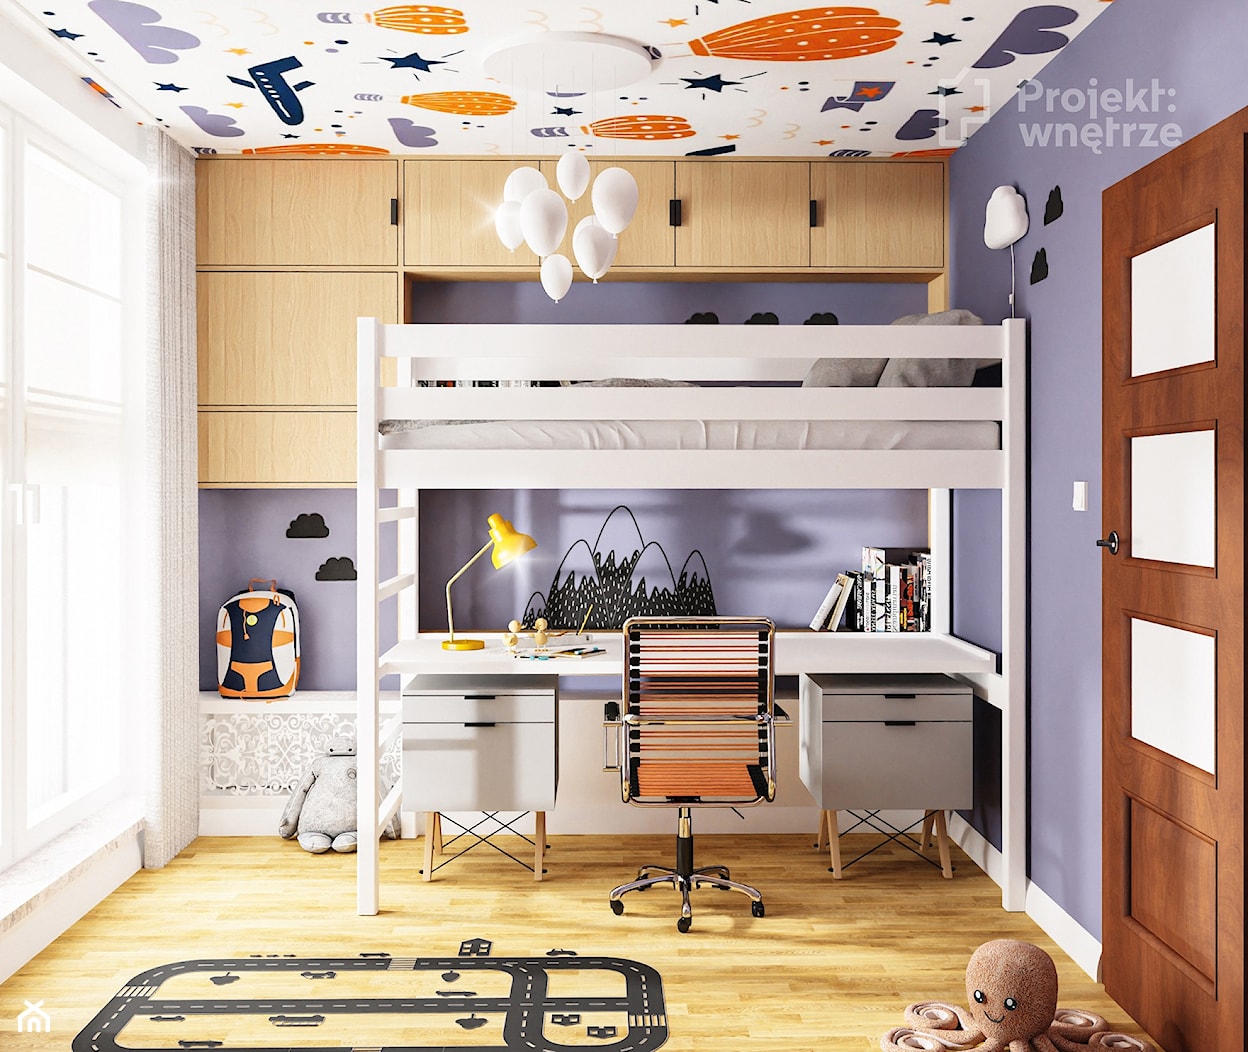 Pokój dla chłopca mały pokój dziecka łóżko piętrowe z biurkiem z szafą styl skandynawski naklejki tapeta na suficie strefa spania, strefa nauki motyw balony PROJEKT: WNĘTRZE - zdjęcie od PROJEKT: WNĘTRZE - Homebook